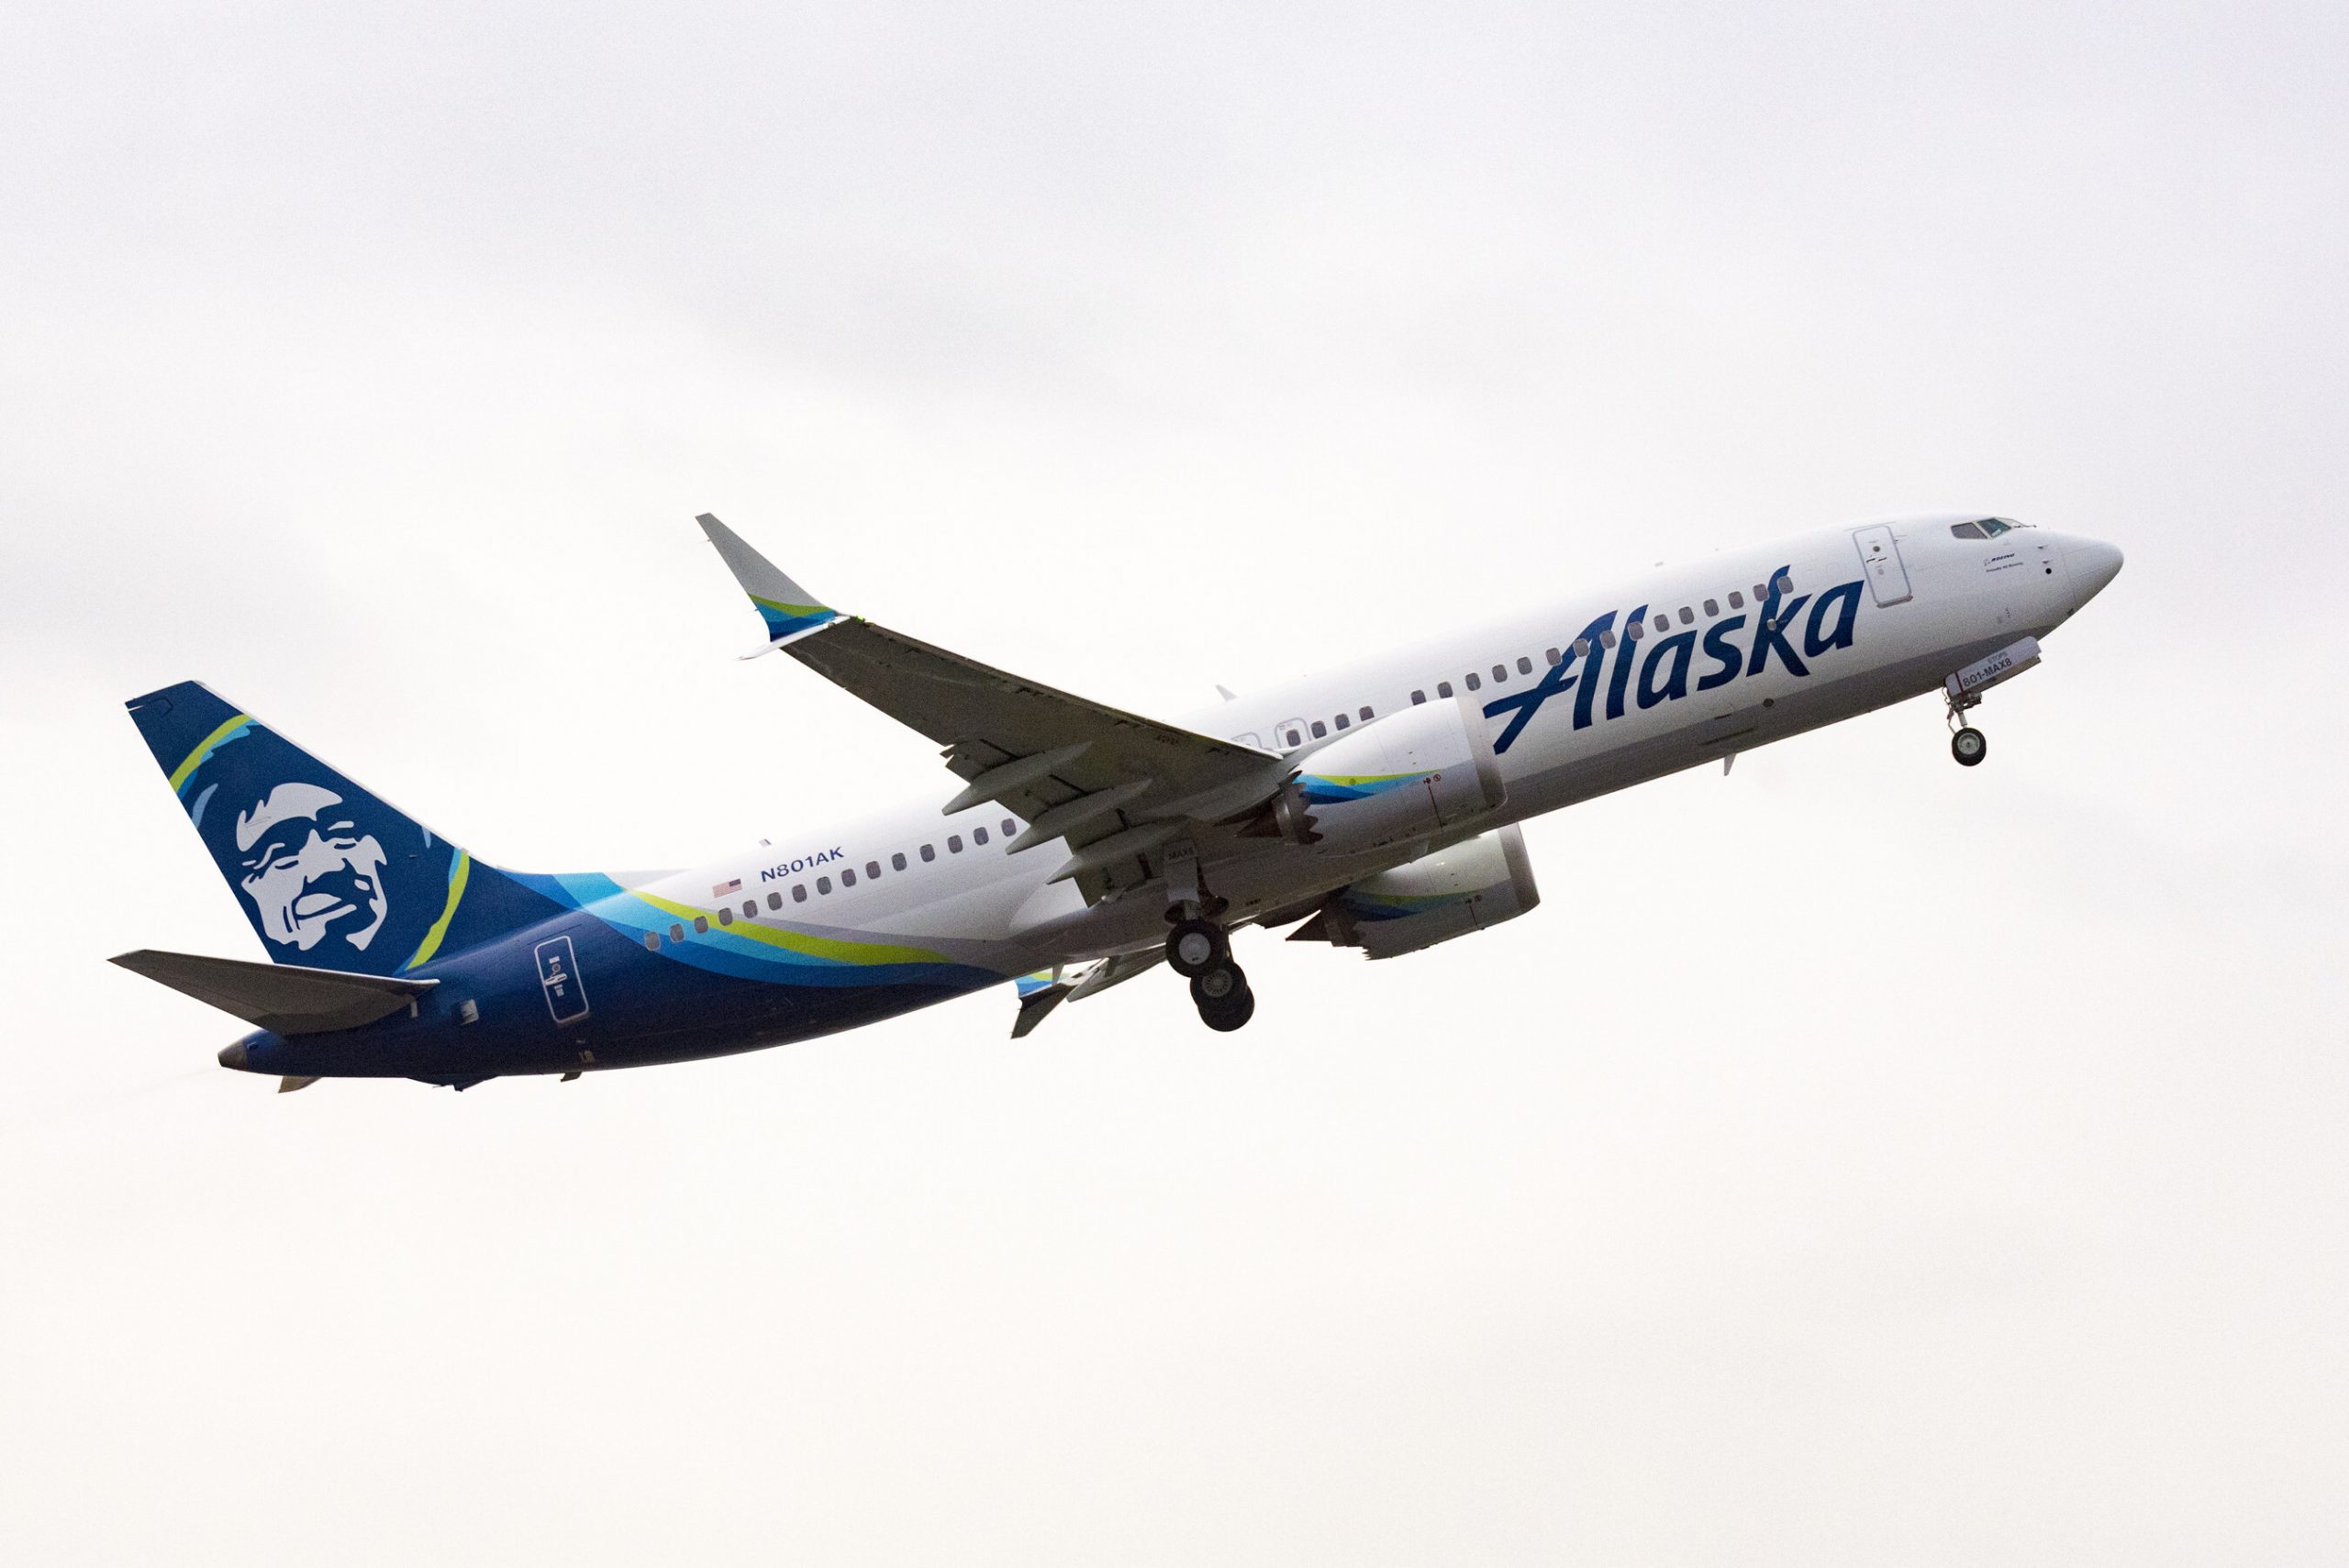 Alaska's new Boeing 737-8 aircraft